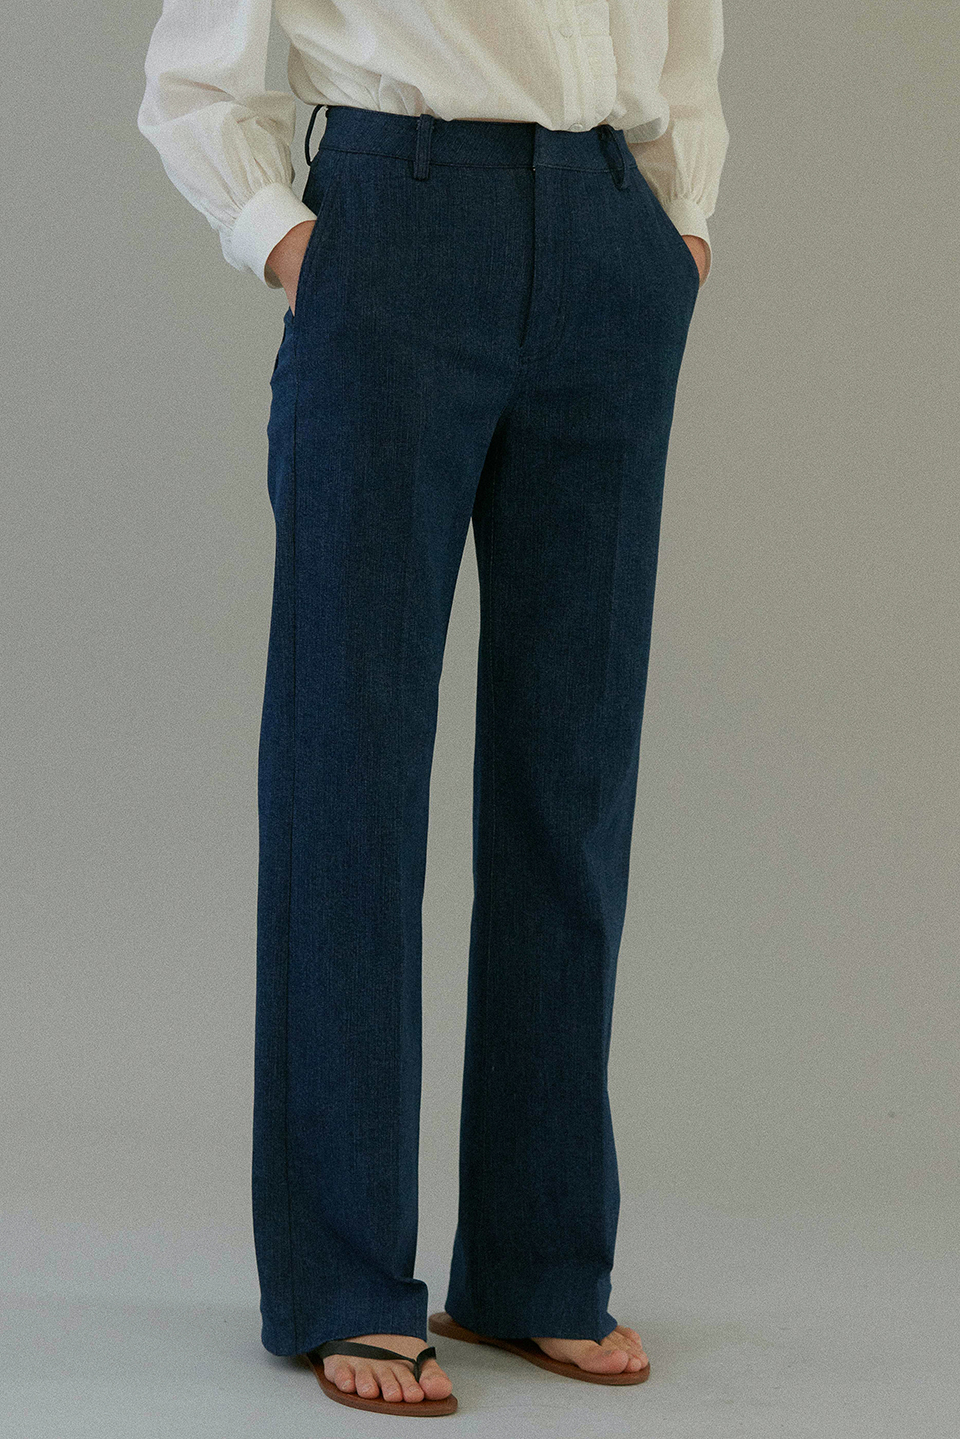 classic denim pants (classic blue)